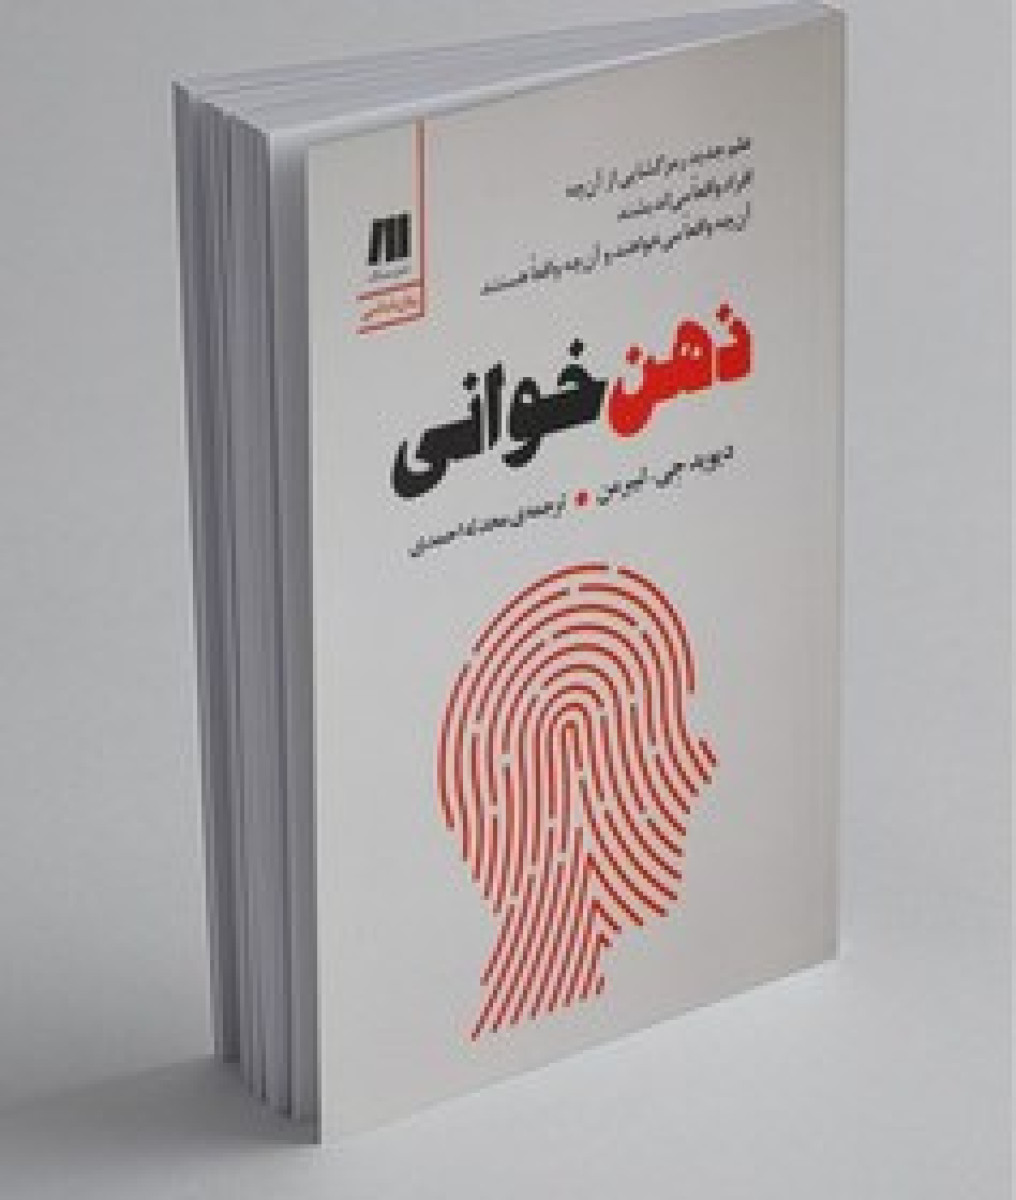 ذهن خوانی/دیوید جی لیبرمن/محدثه احمدی/نشرسنگ